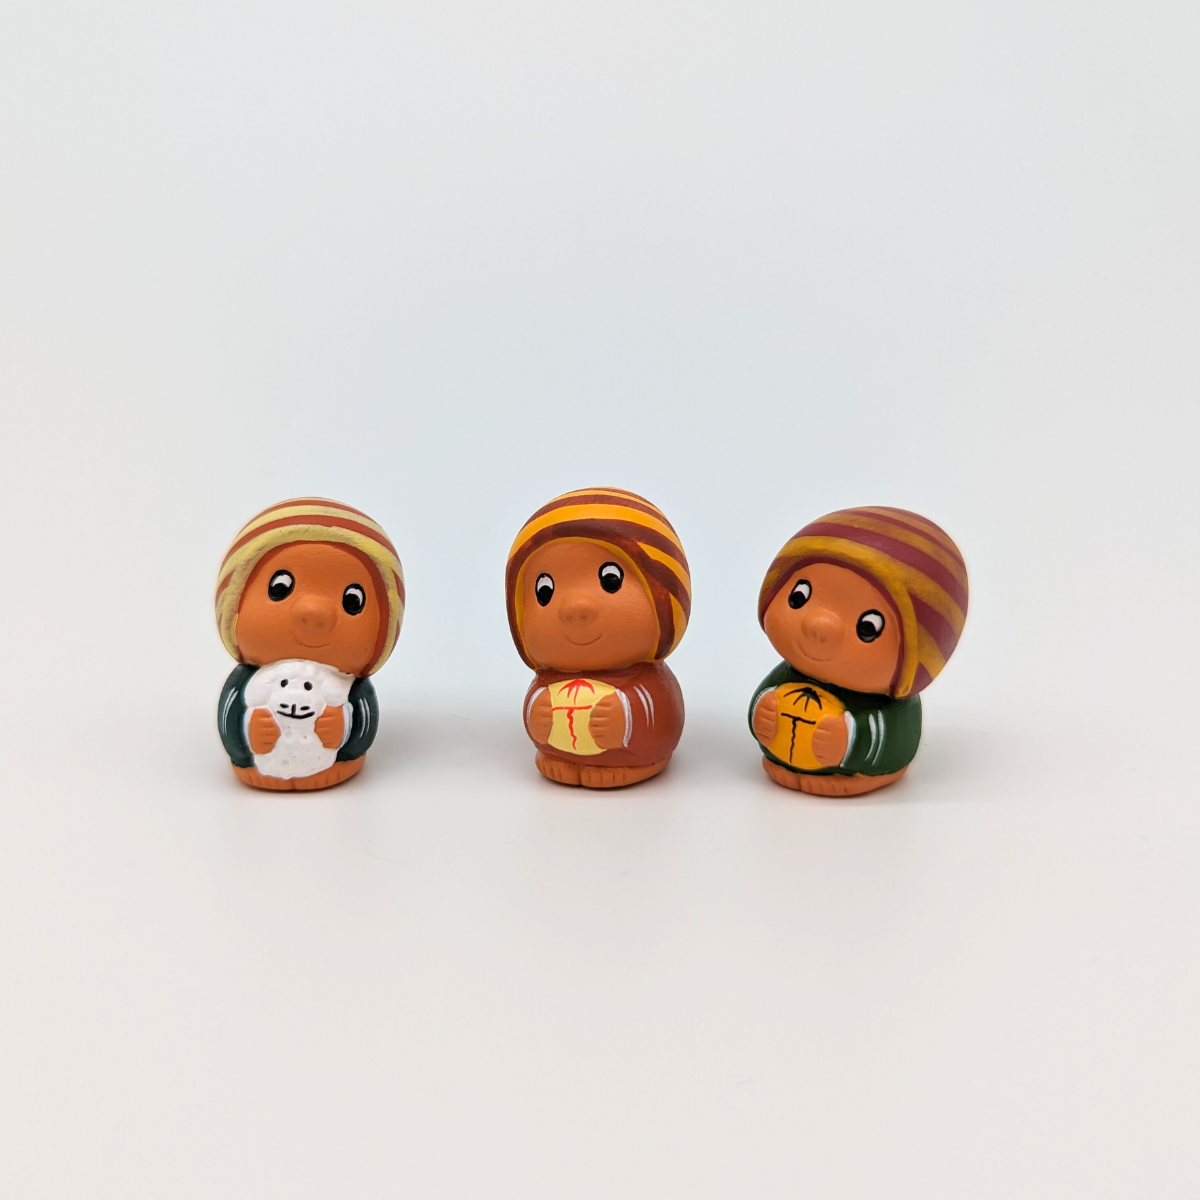 Des figurines en terre cuite, fabriquées à la main par des artisans péruviens talentueux, incarnent la magie de Noël d'une manière bien spéciale. Les Rois Mages, Joseph et l'enfant Jésus, emportent avec eux un morceau de la culture péruvienne, arborant fièrement des bonnets traditionnels.